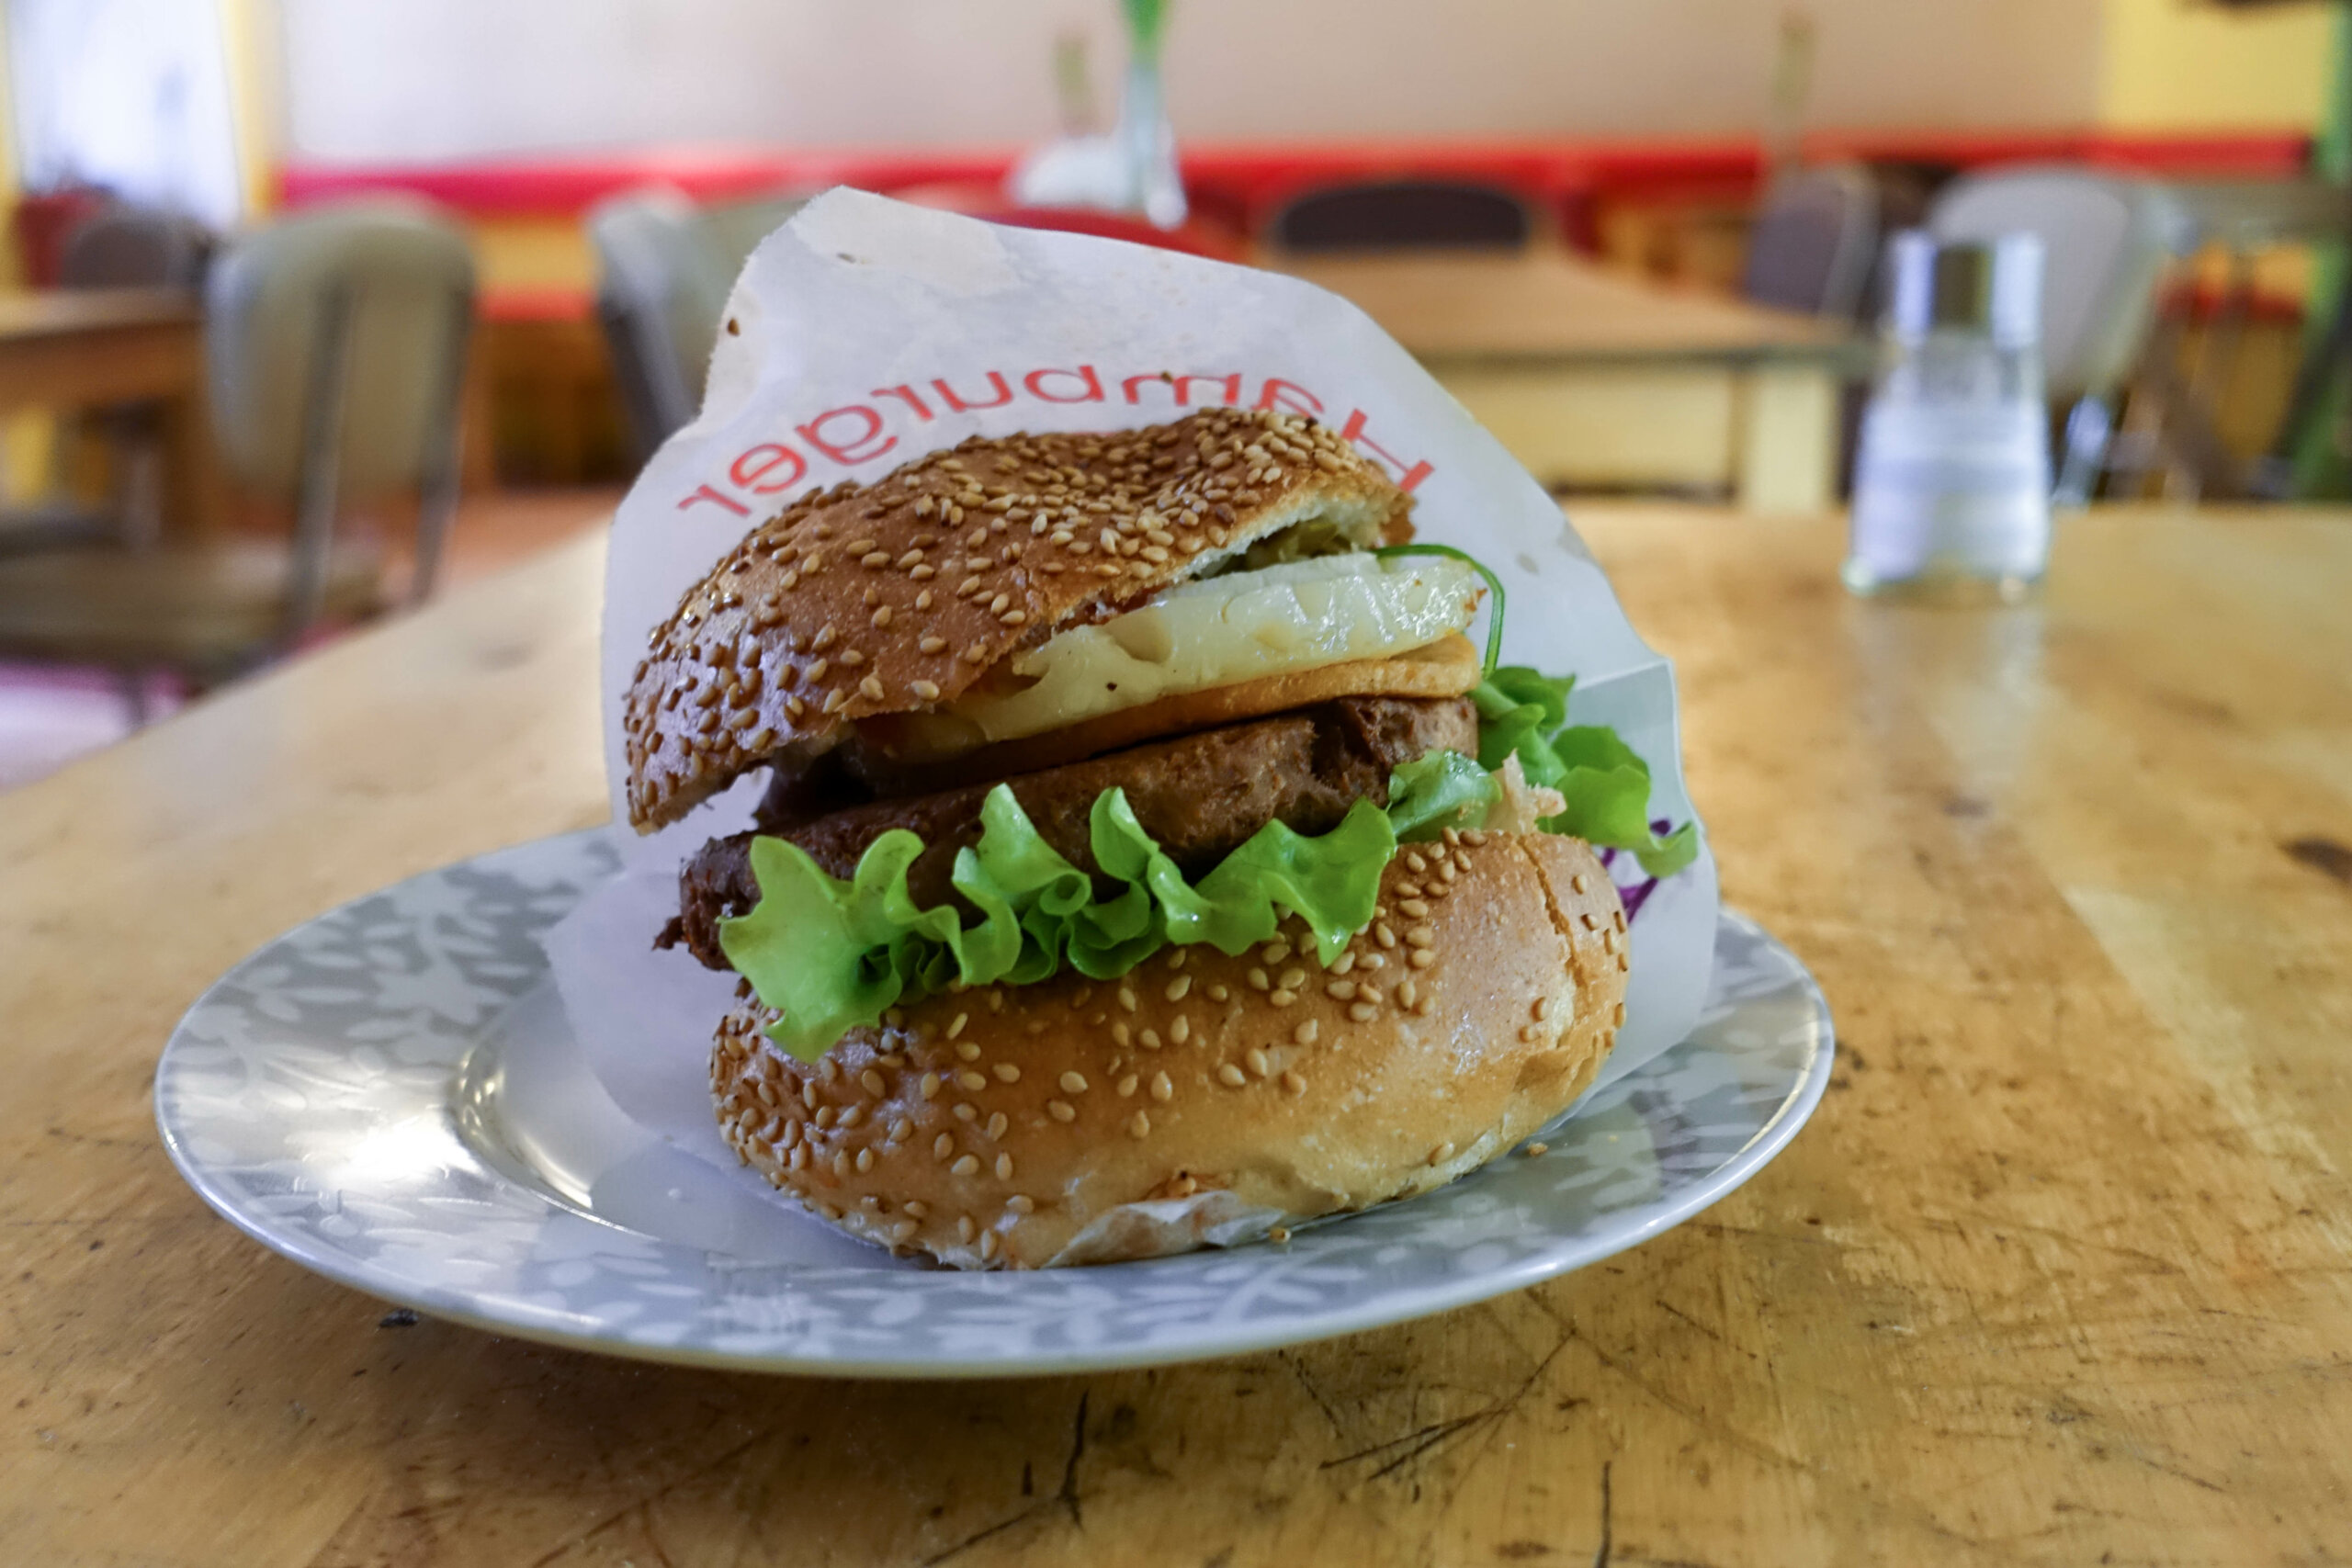 Hawaii Burger, Yoyos Foodworld, Berlin